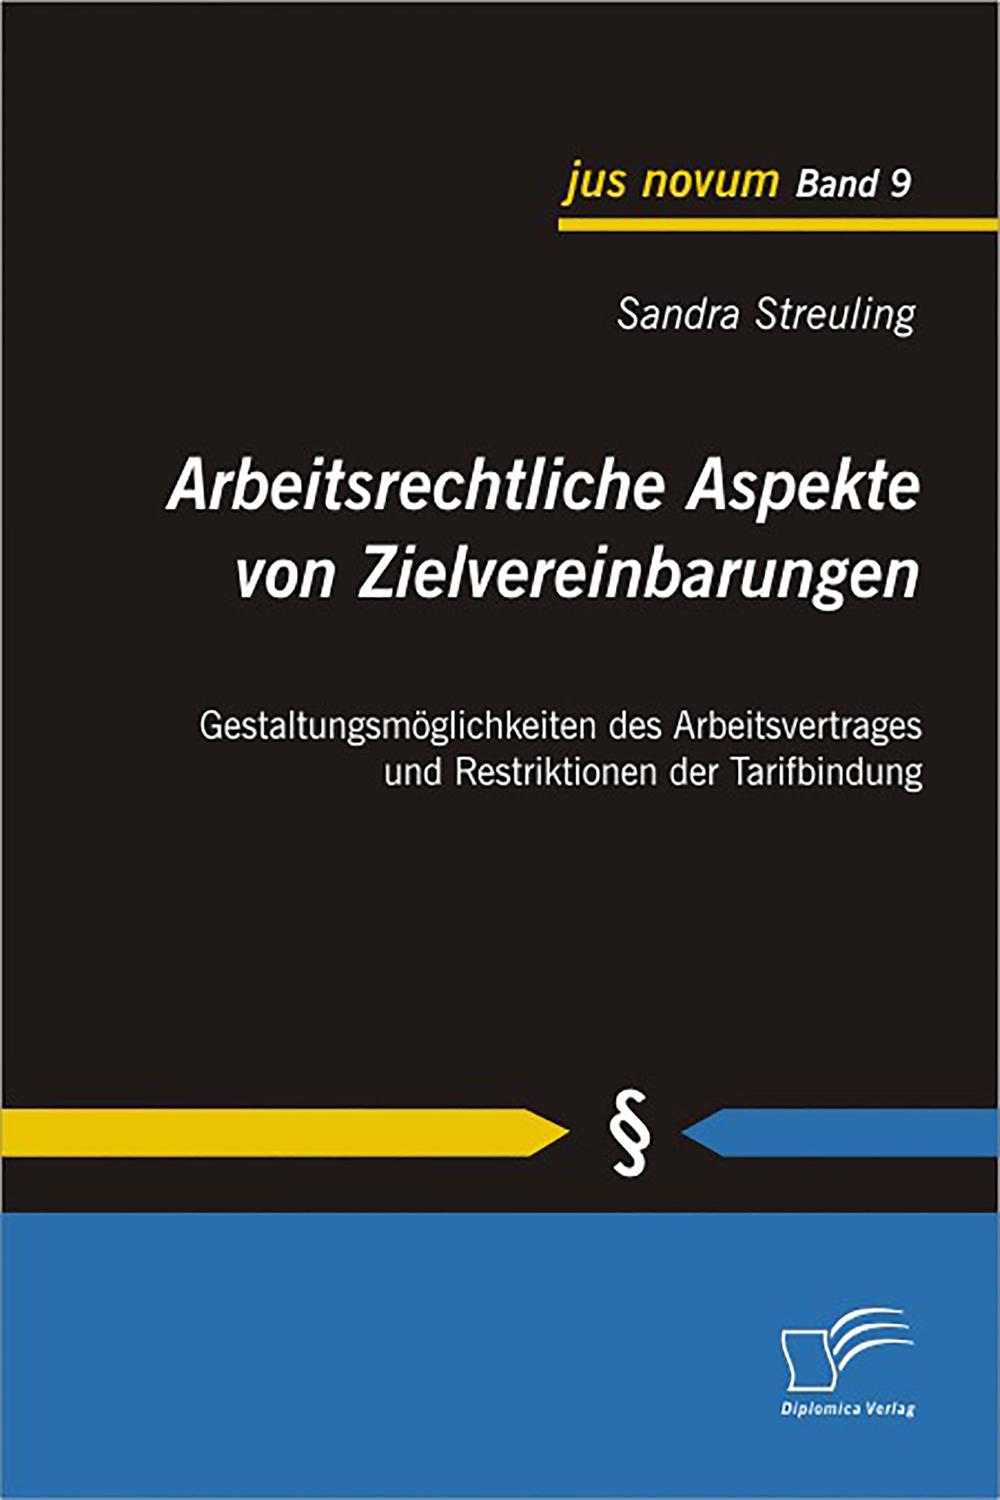 Arbeitsrechtliche Aspekte von Zielvereinbarungen: Gestaltungsmöglichkeiten des Arbeitsvertrages und Restriktionen der Tarifbindung - Sandra Streuling